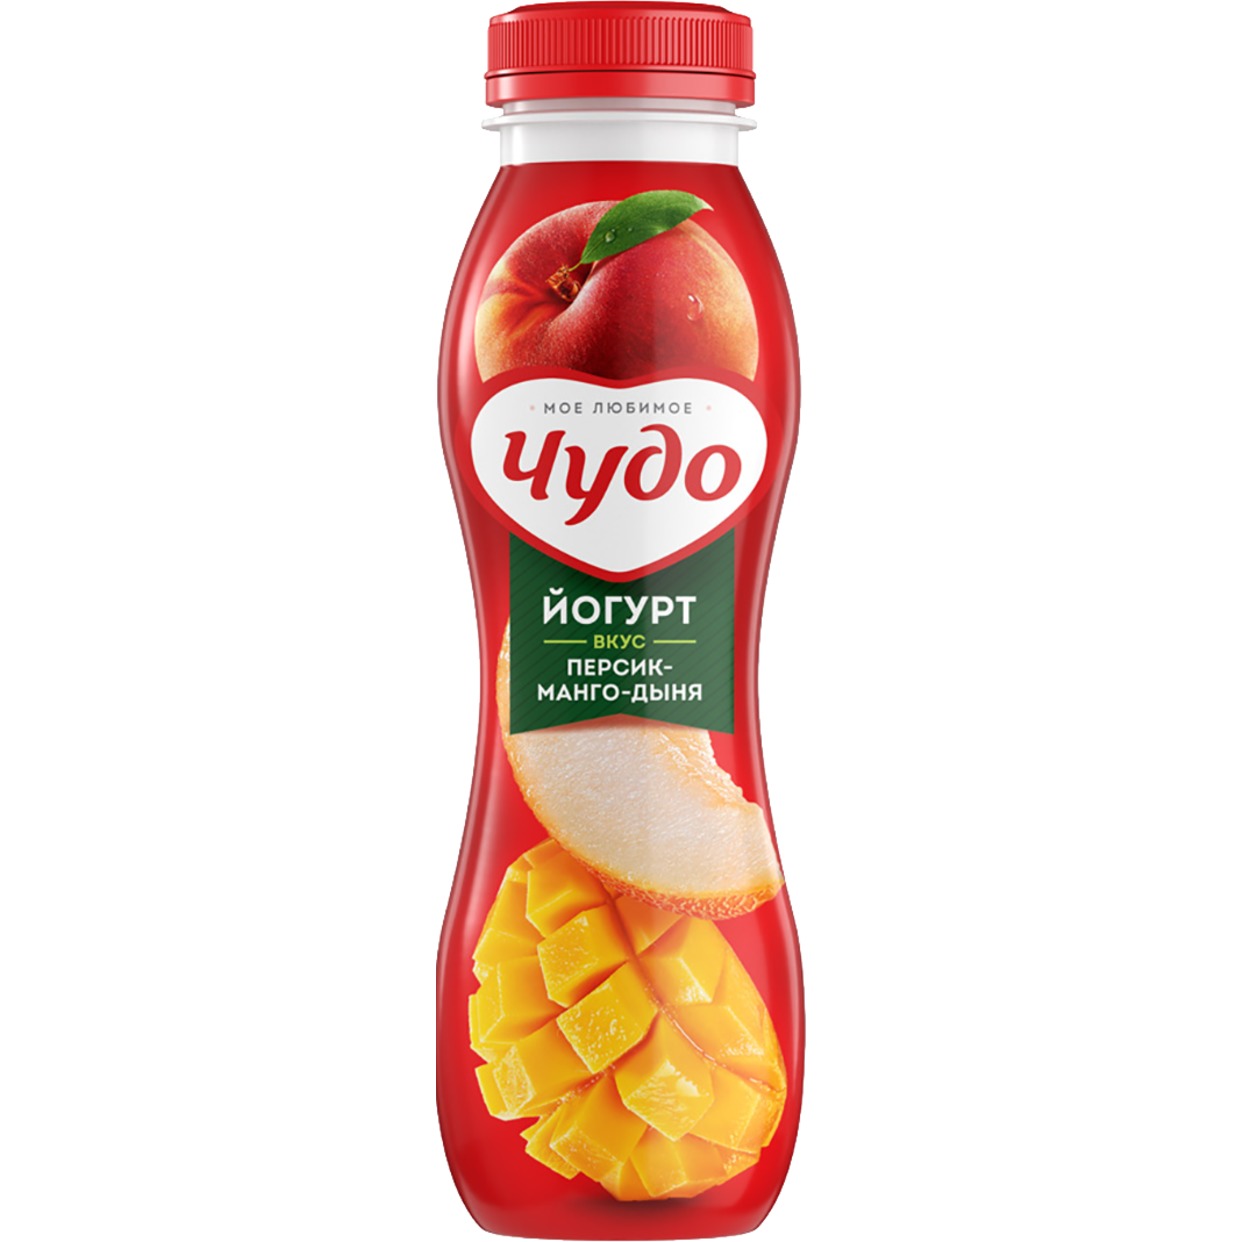 Йогурт Чудо питьевой со вкусом персика, манго и дыни 2,4% 270г по акции в Пятерочке